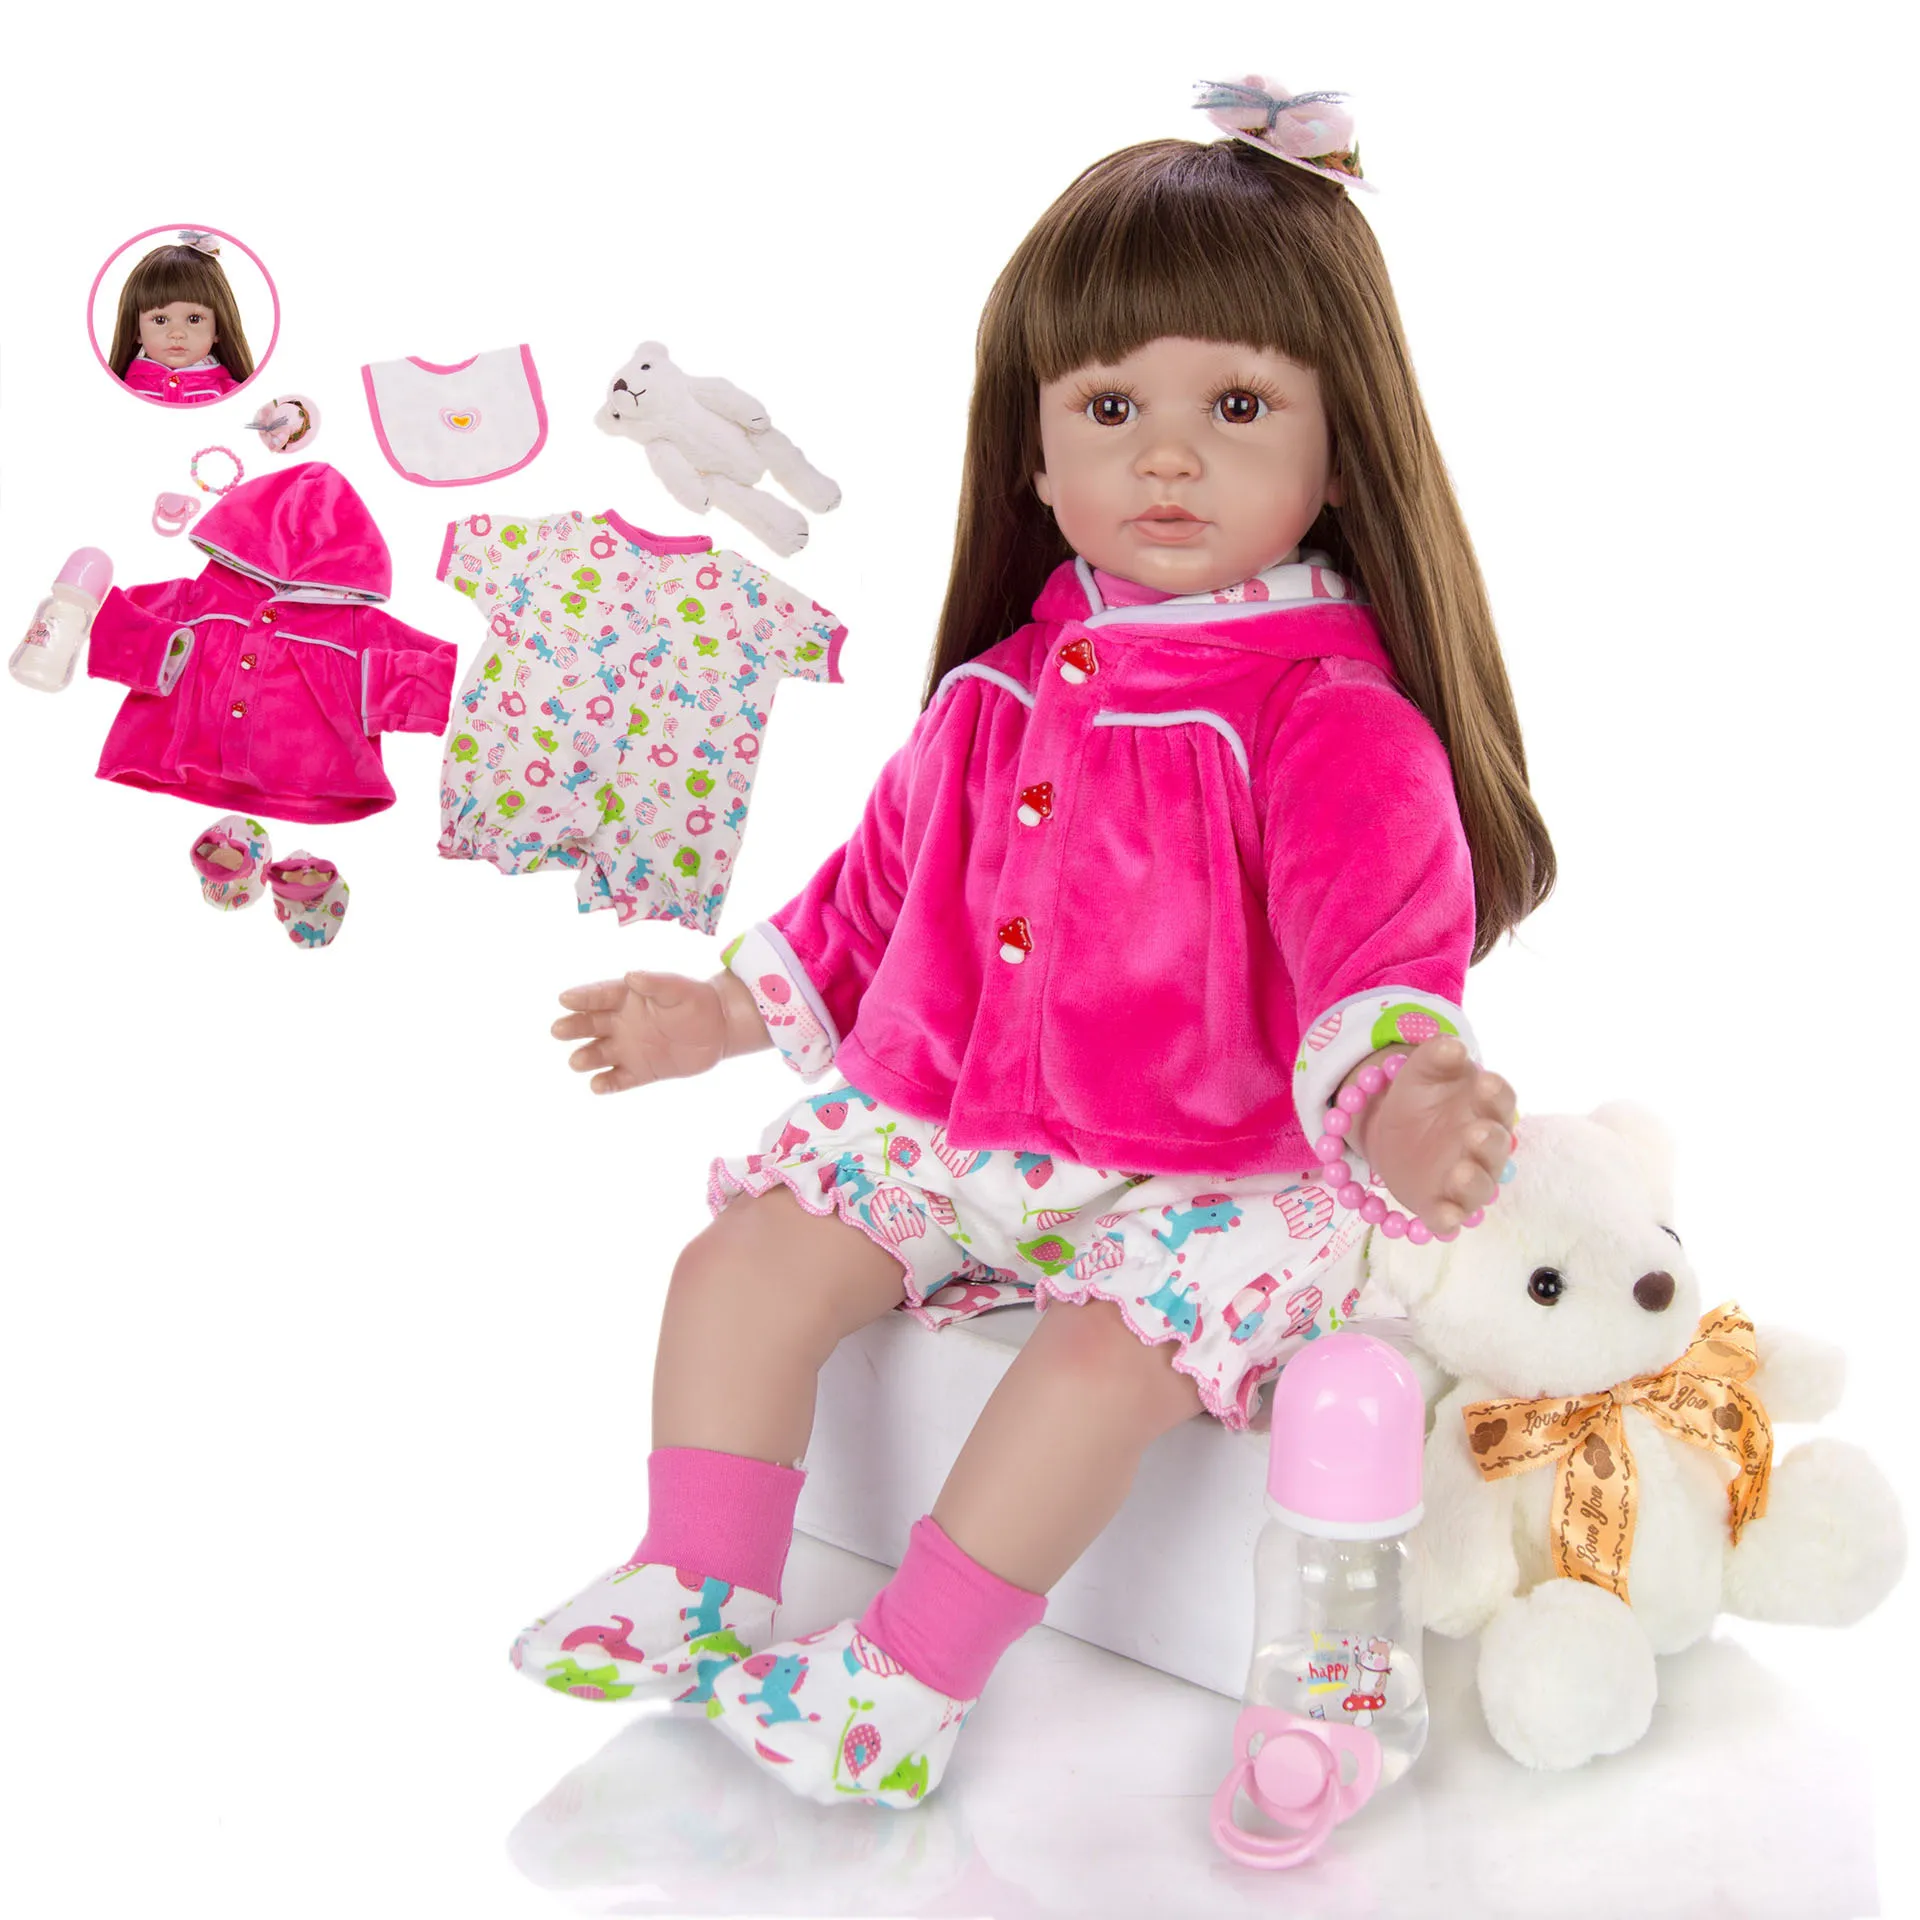 

Кукла новорожденная, тканевое тело, виниловая силиконовая кукла принцессы новорожденного, 24 дюйма, l.o.l, кукла-одевалка для девочек, подарок